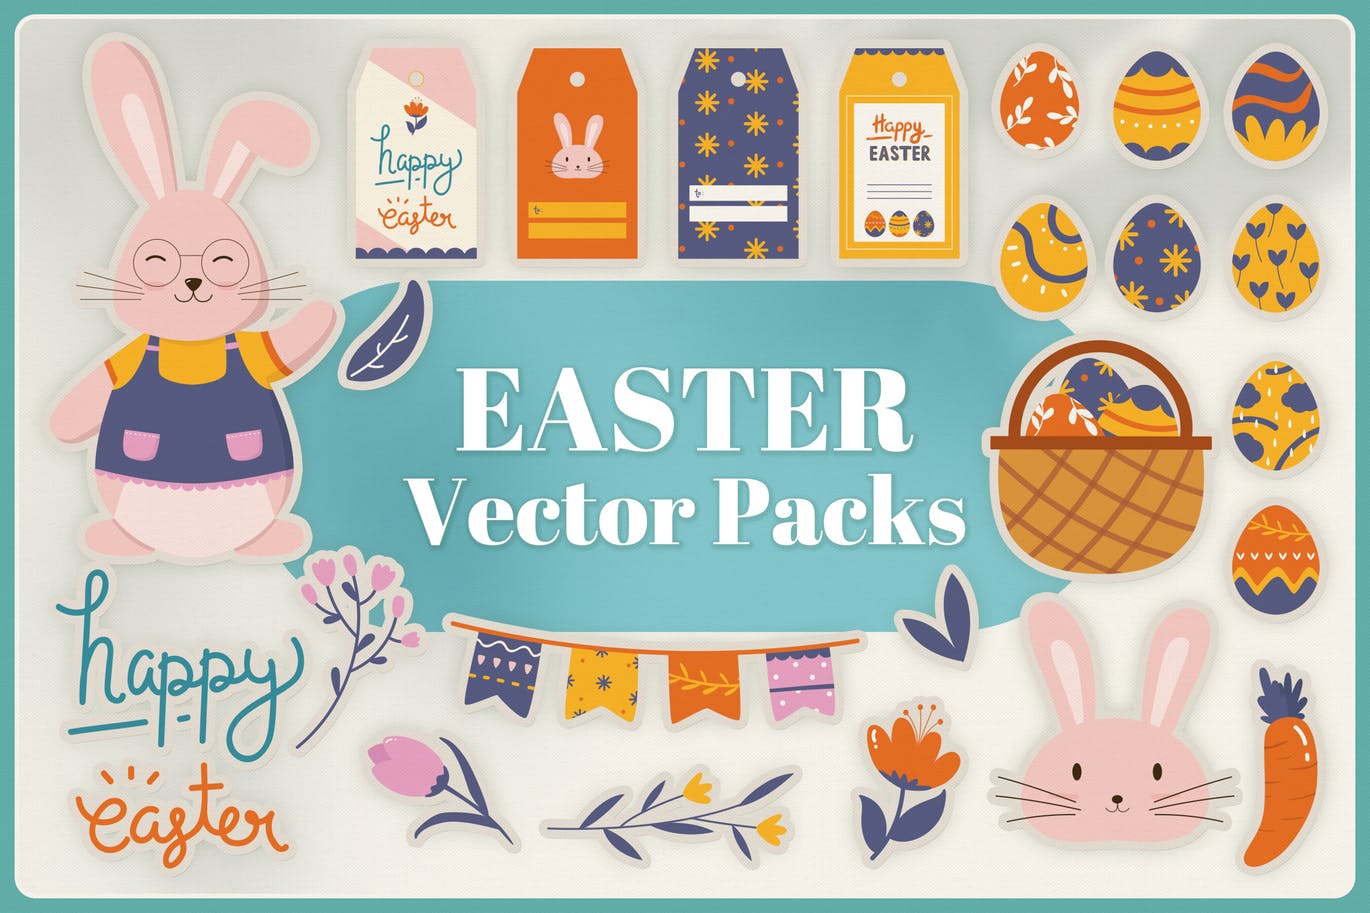 复活节节日主题元素矢量16图库精选设计素材 Easter Vector Pack插图